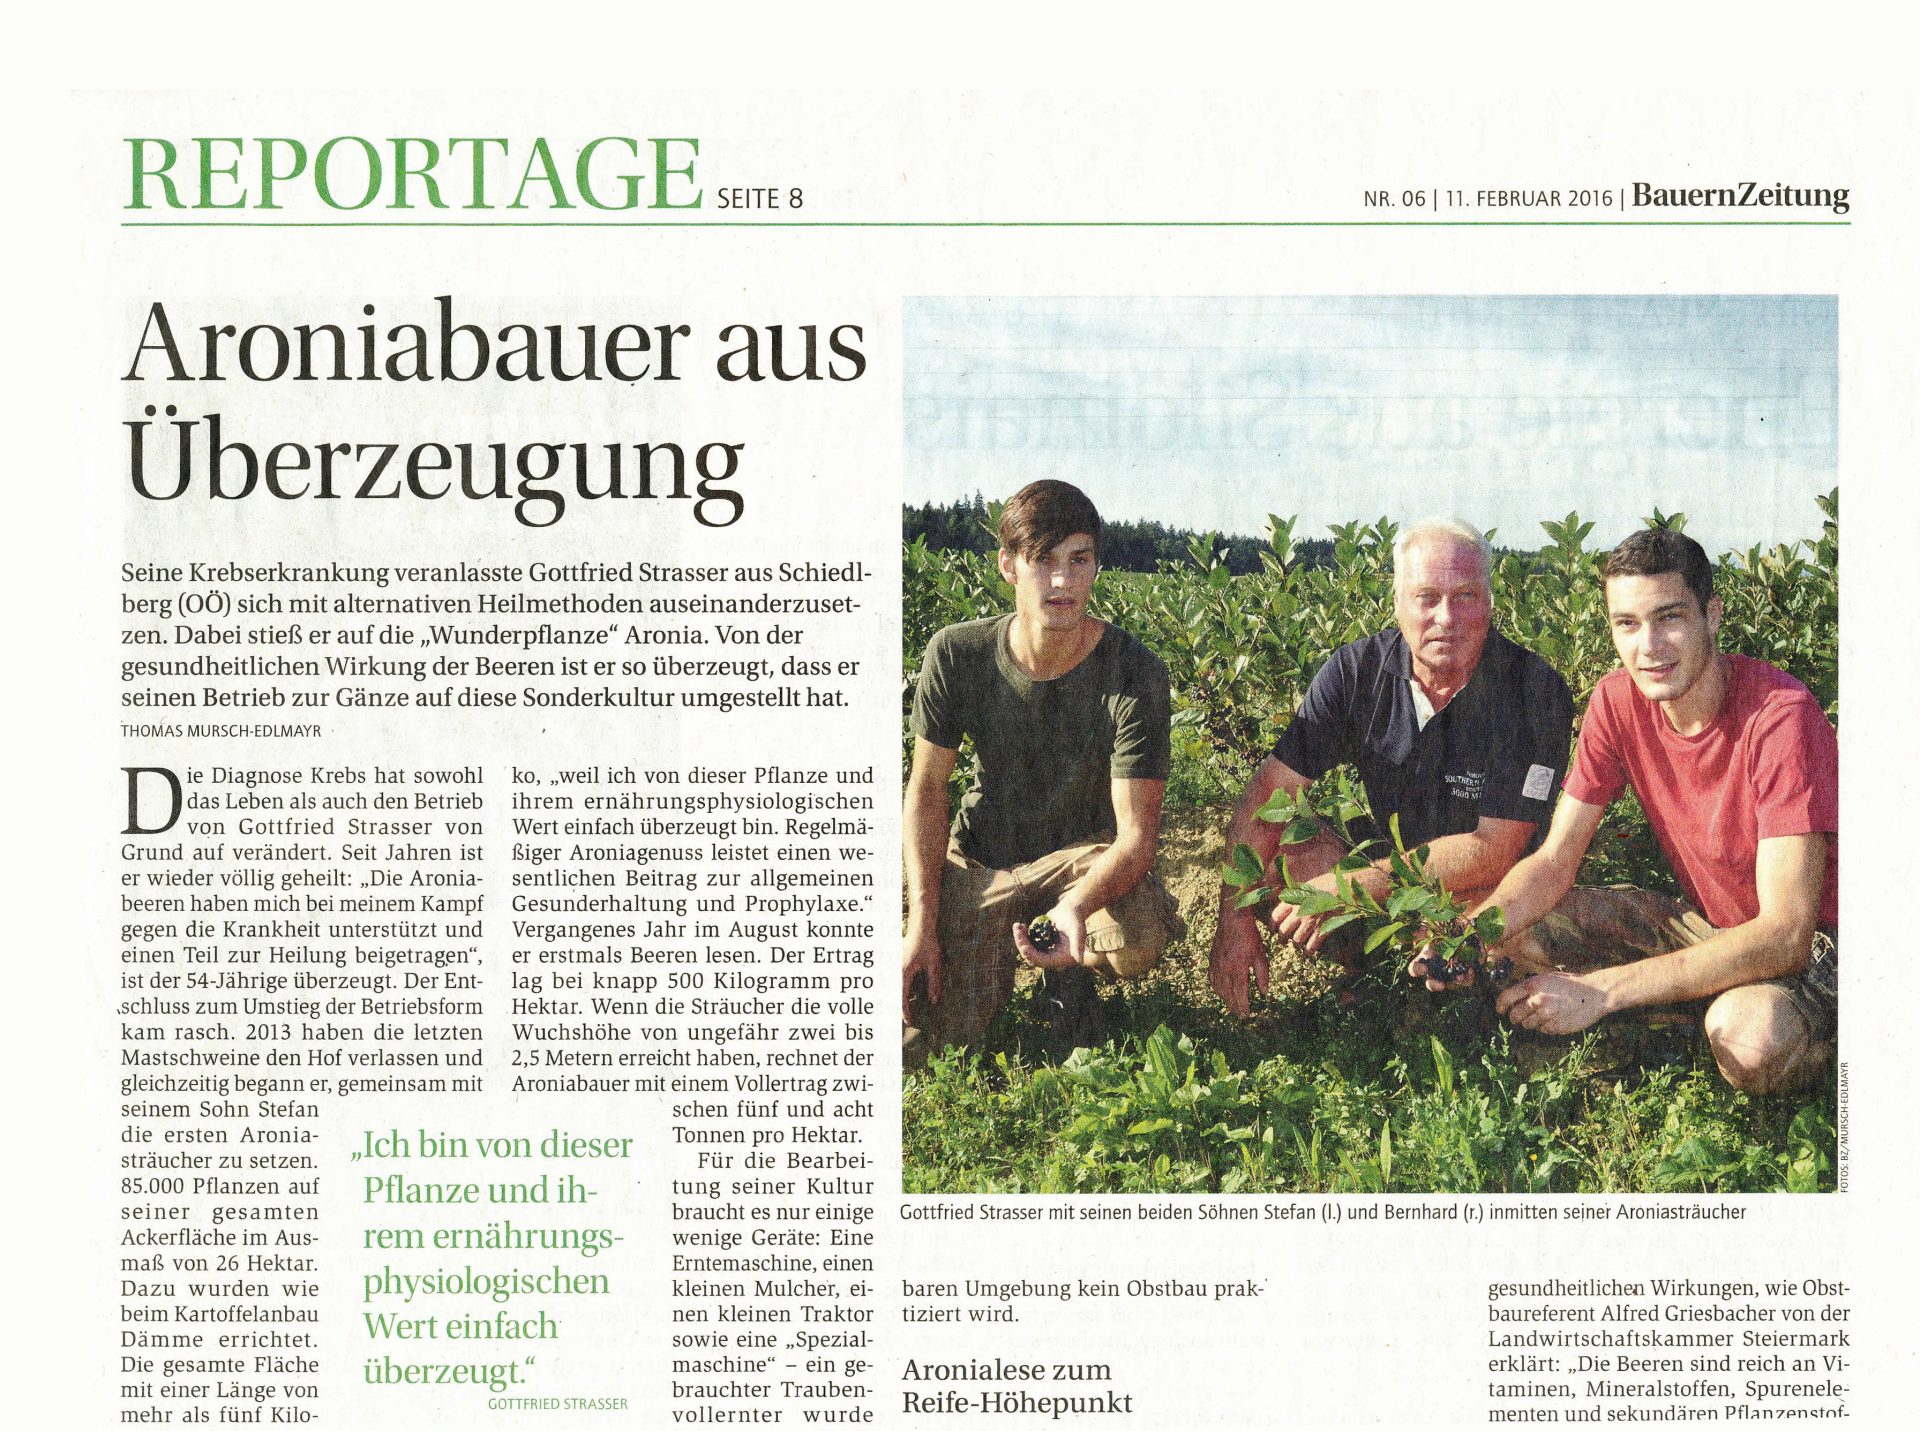 Reportage in der Bauernzeitung: "Aroniabauer aus Überzeugung"